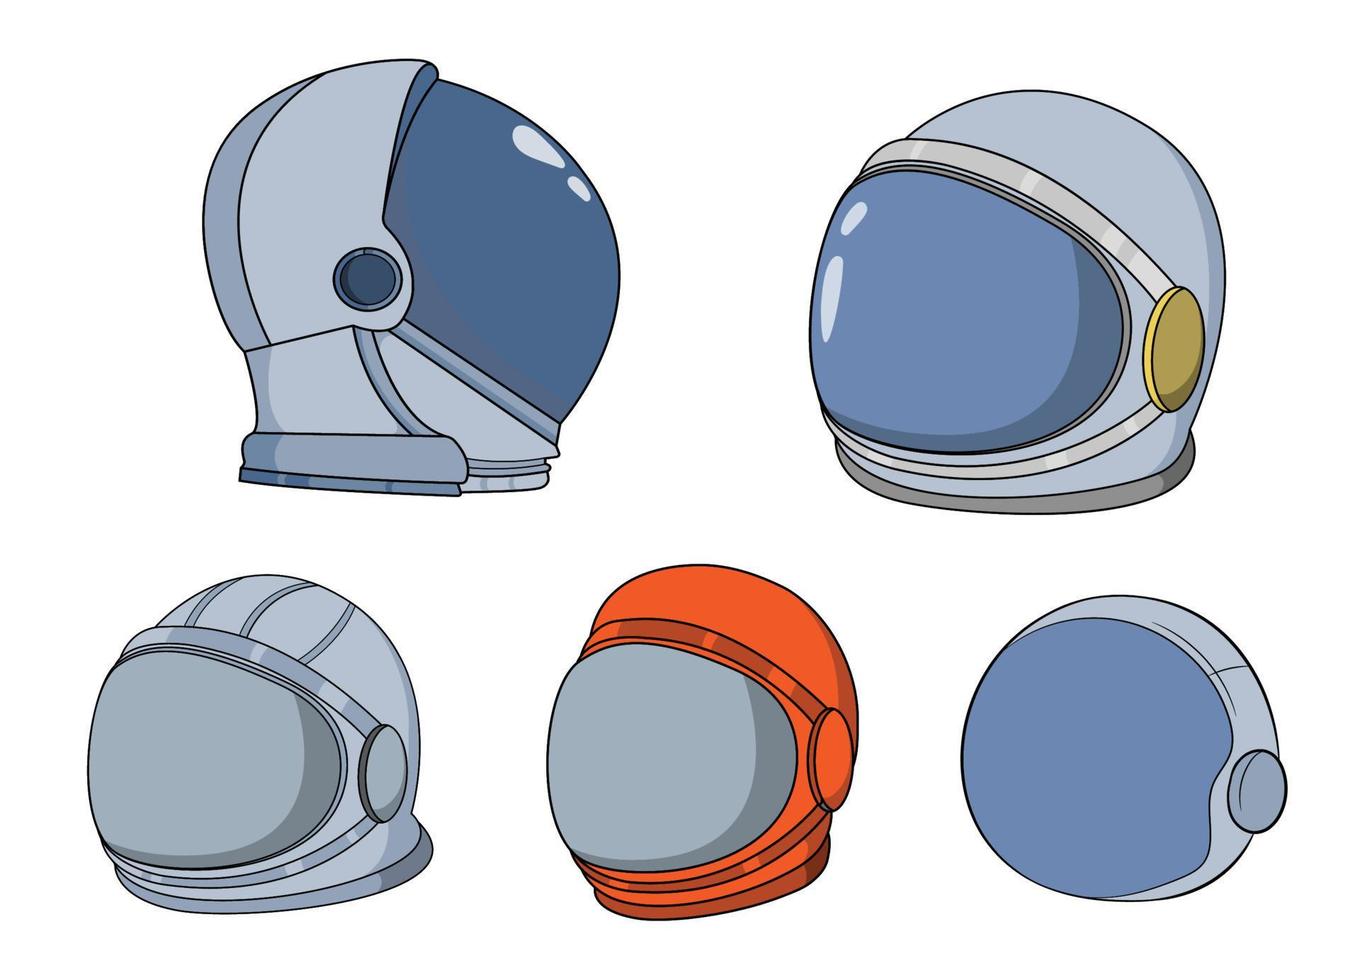 Space Helmet Suit Astronaut Equipment Collection vector